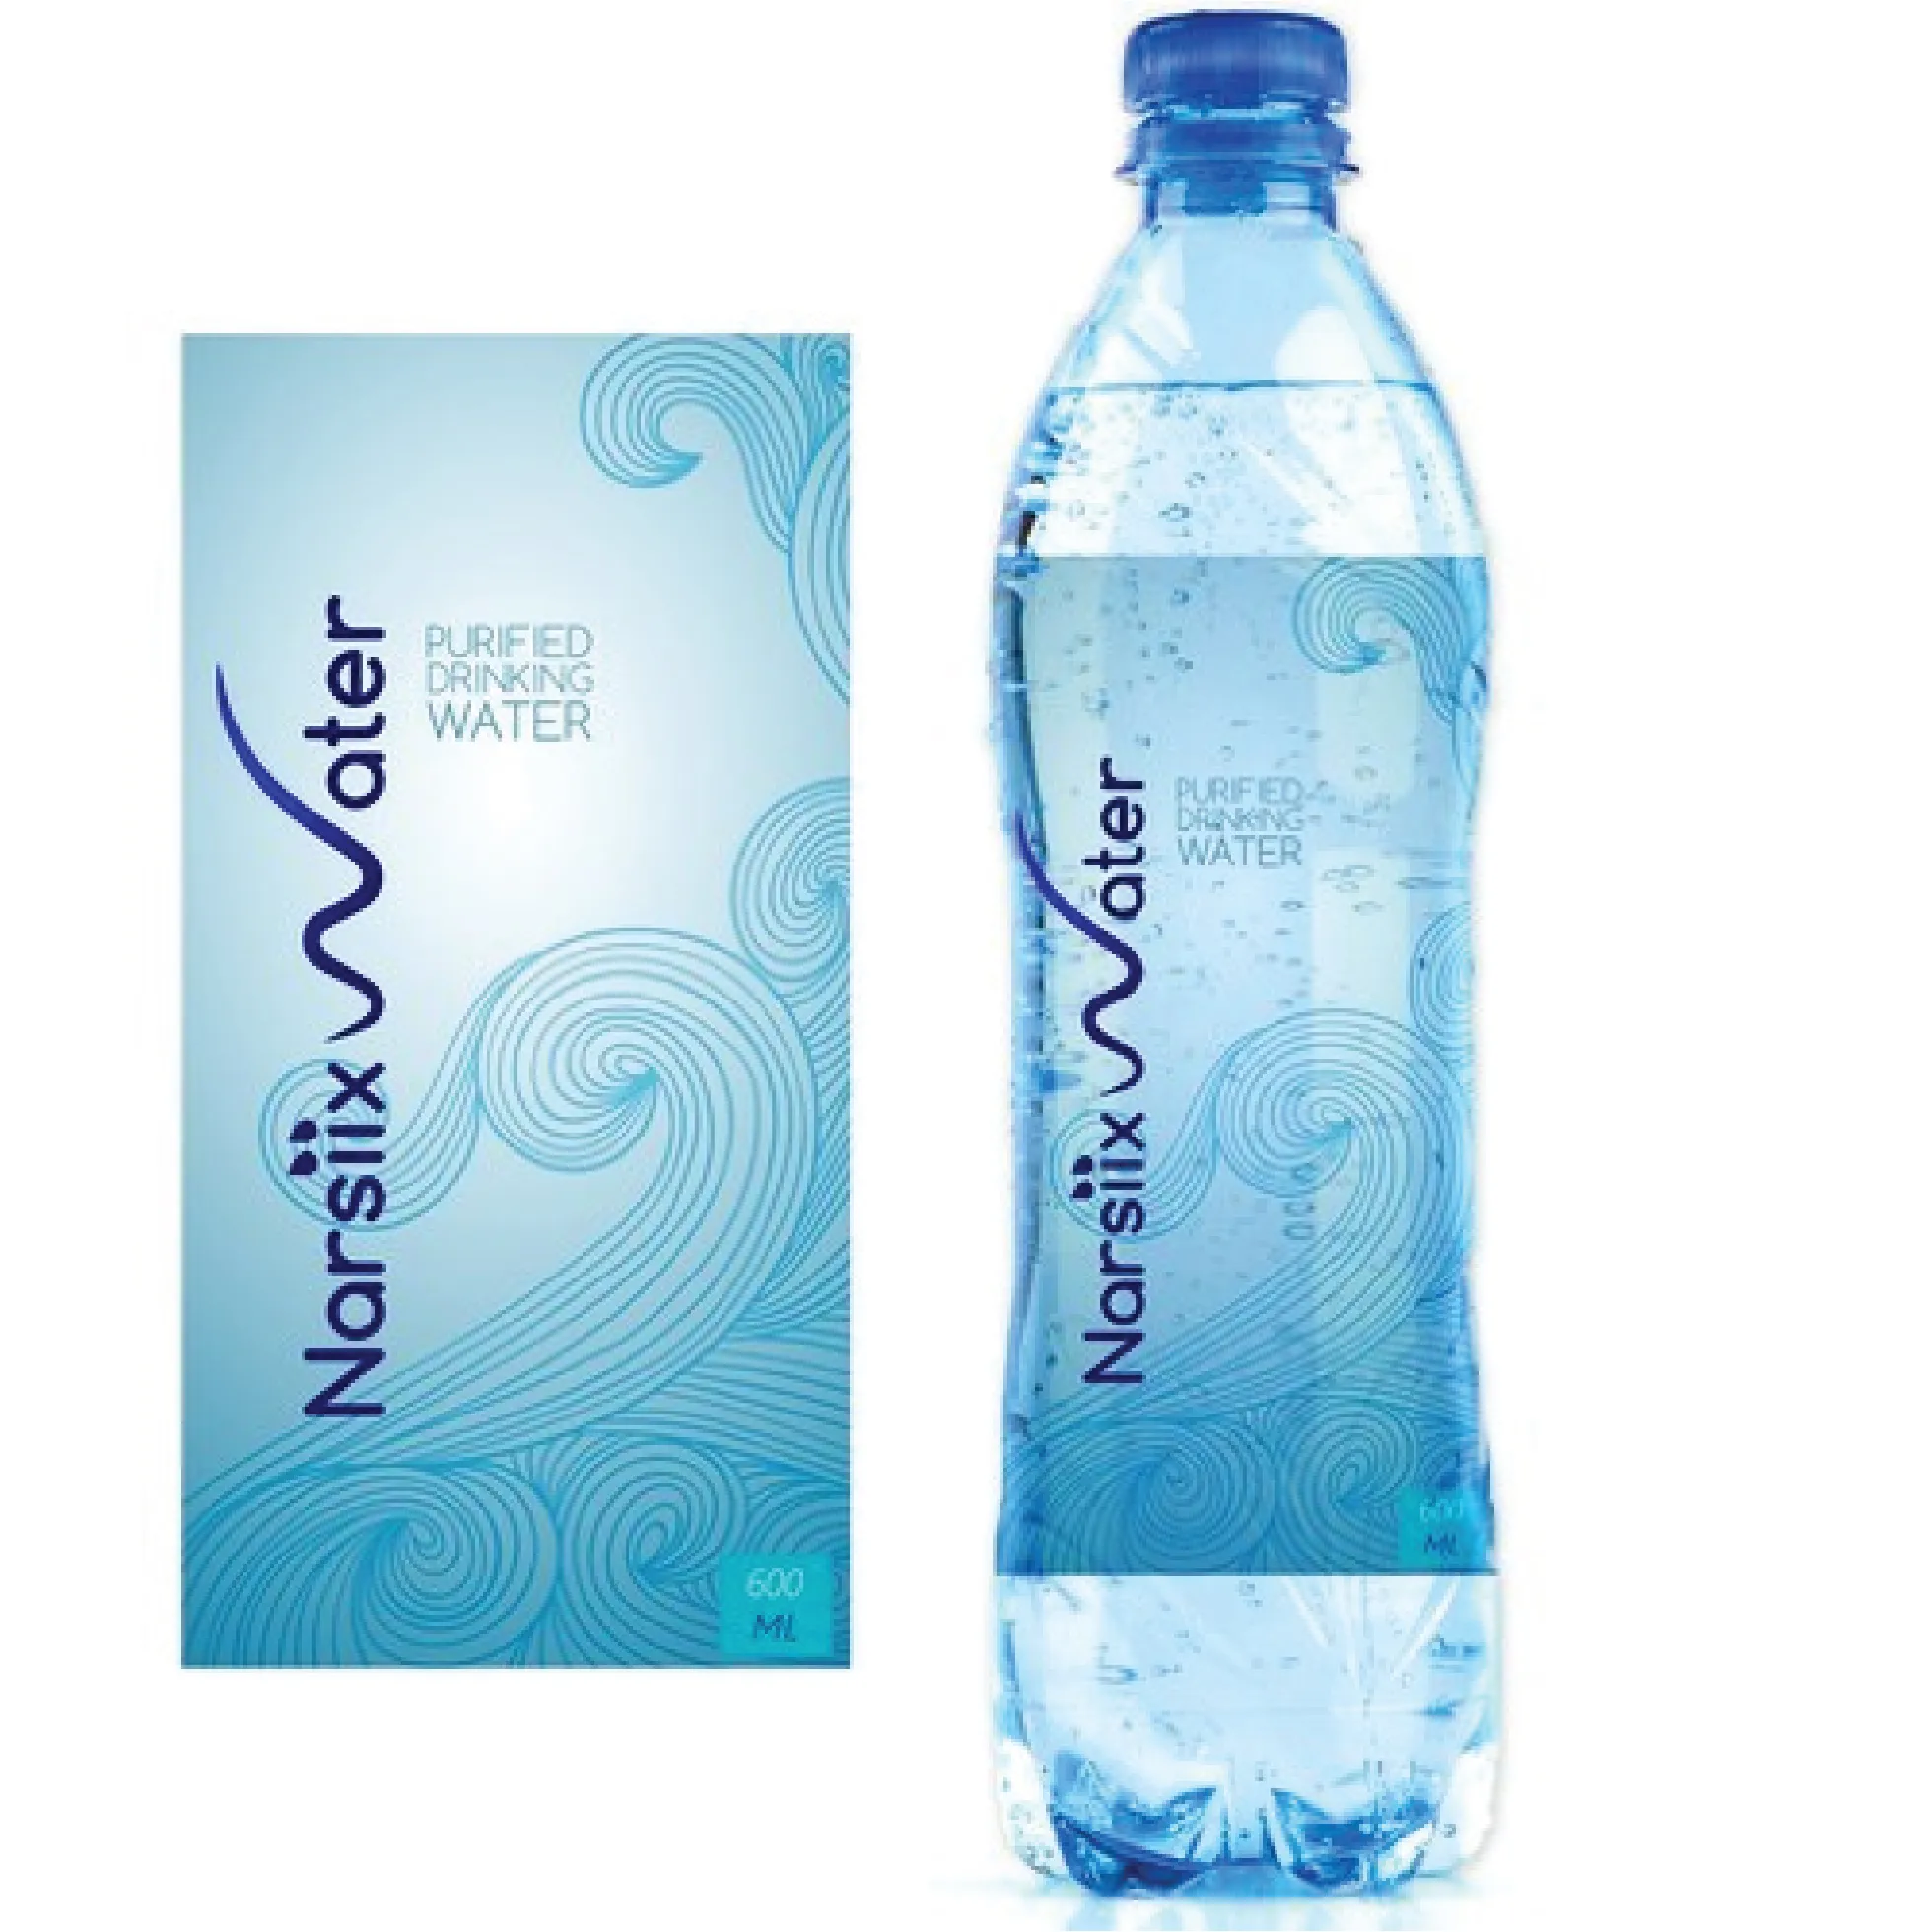 water bottle labels custom